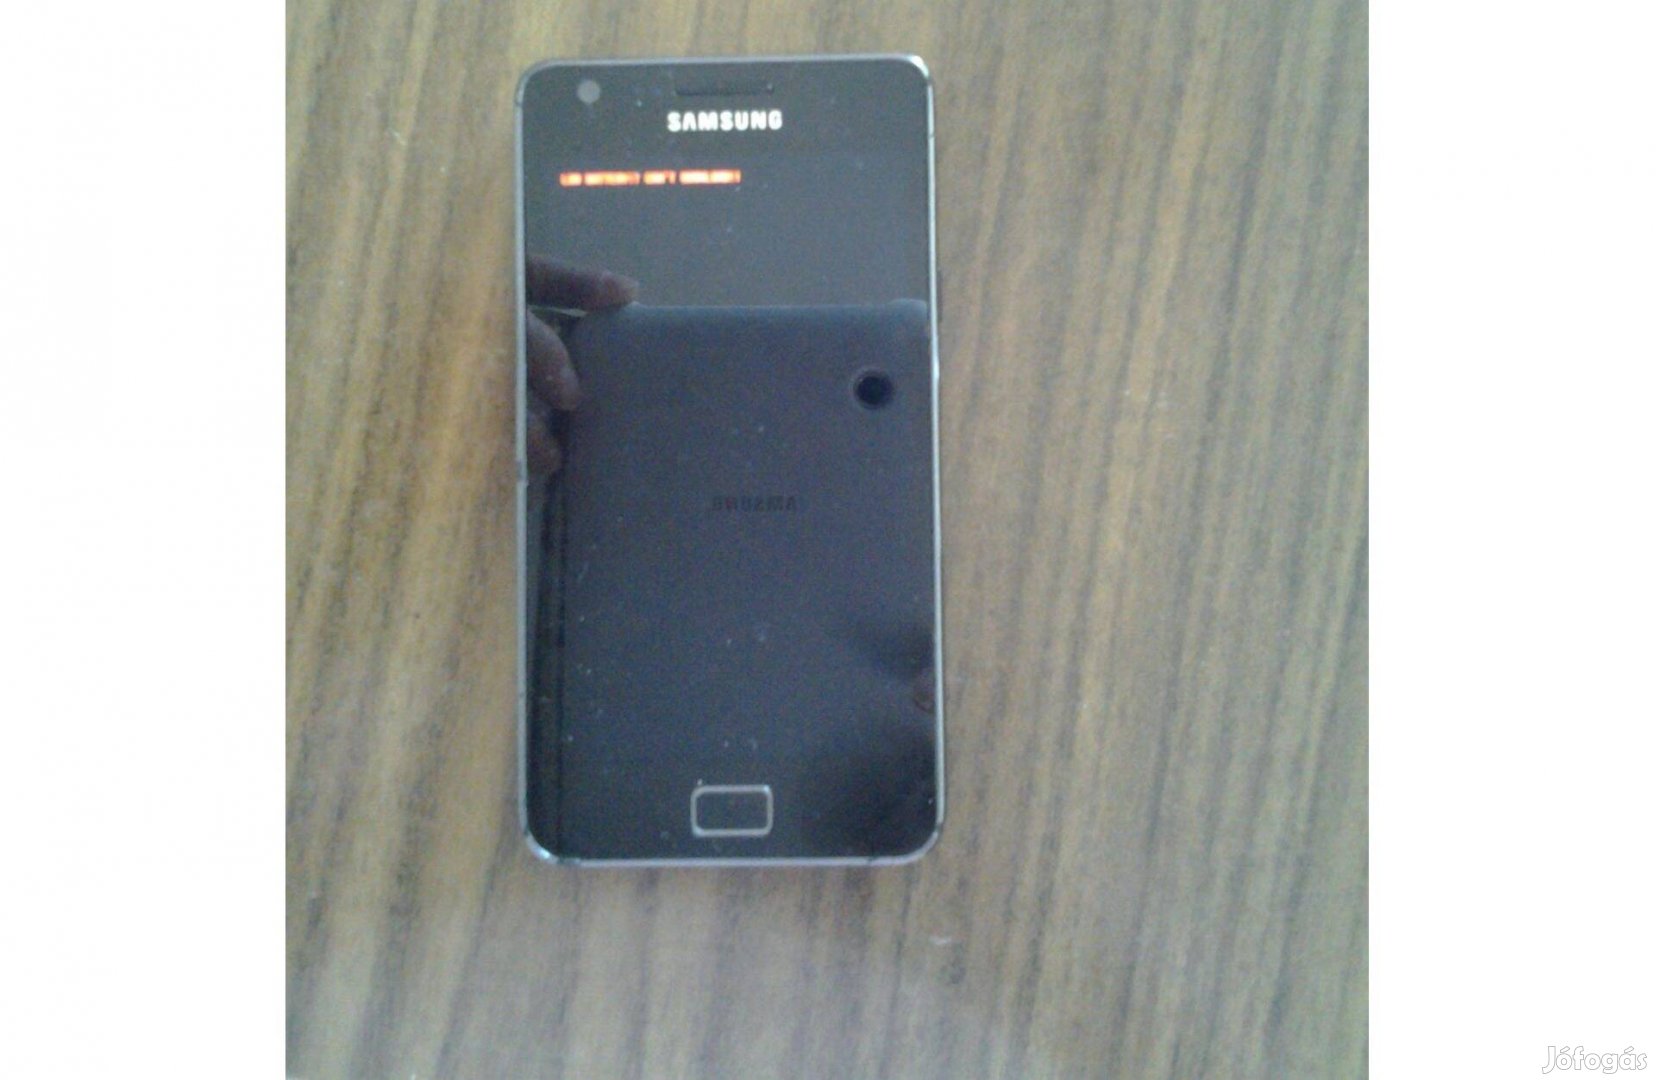 Samsung galaxy s2 gt-i9100, rossz aksi, jó kijelző